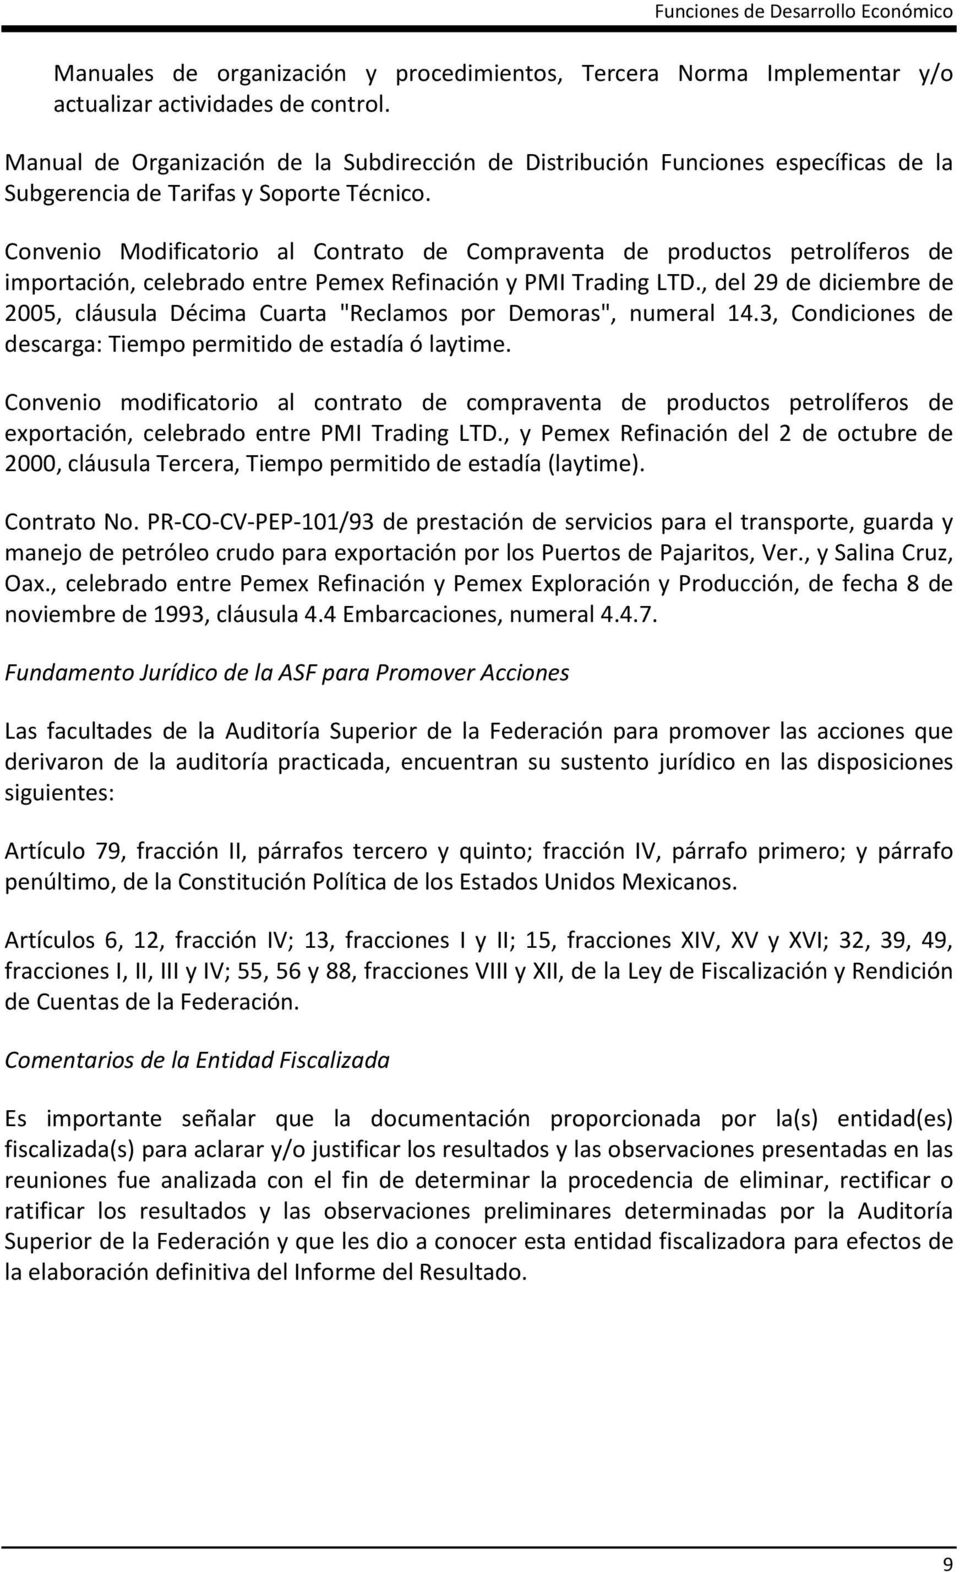 Convenio Modificatorio al Contrato de Compraventa de productos petrolíferos de importación, celebrado entre Pemex Refinación y PMI Trading LTD.